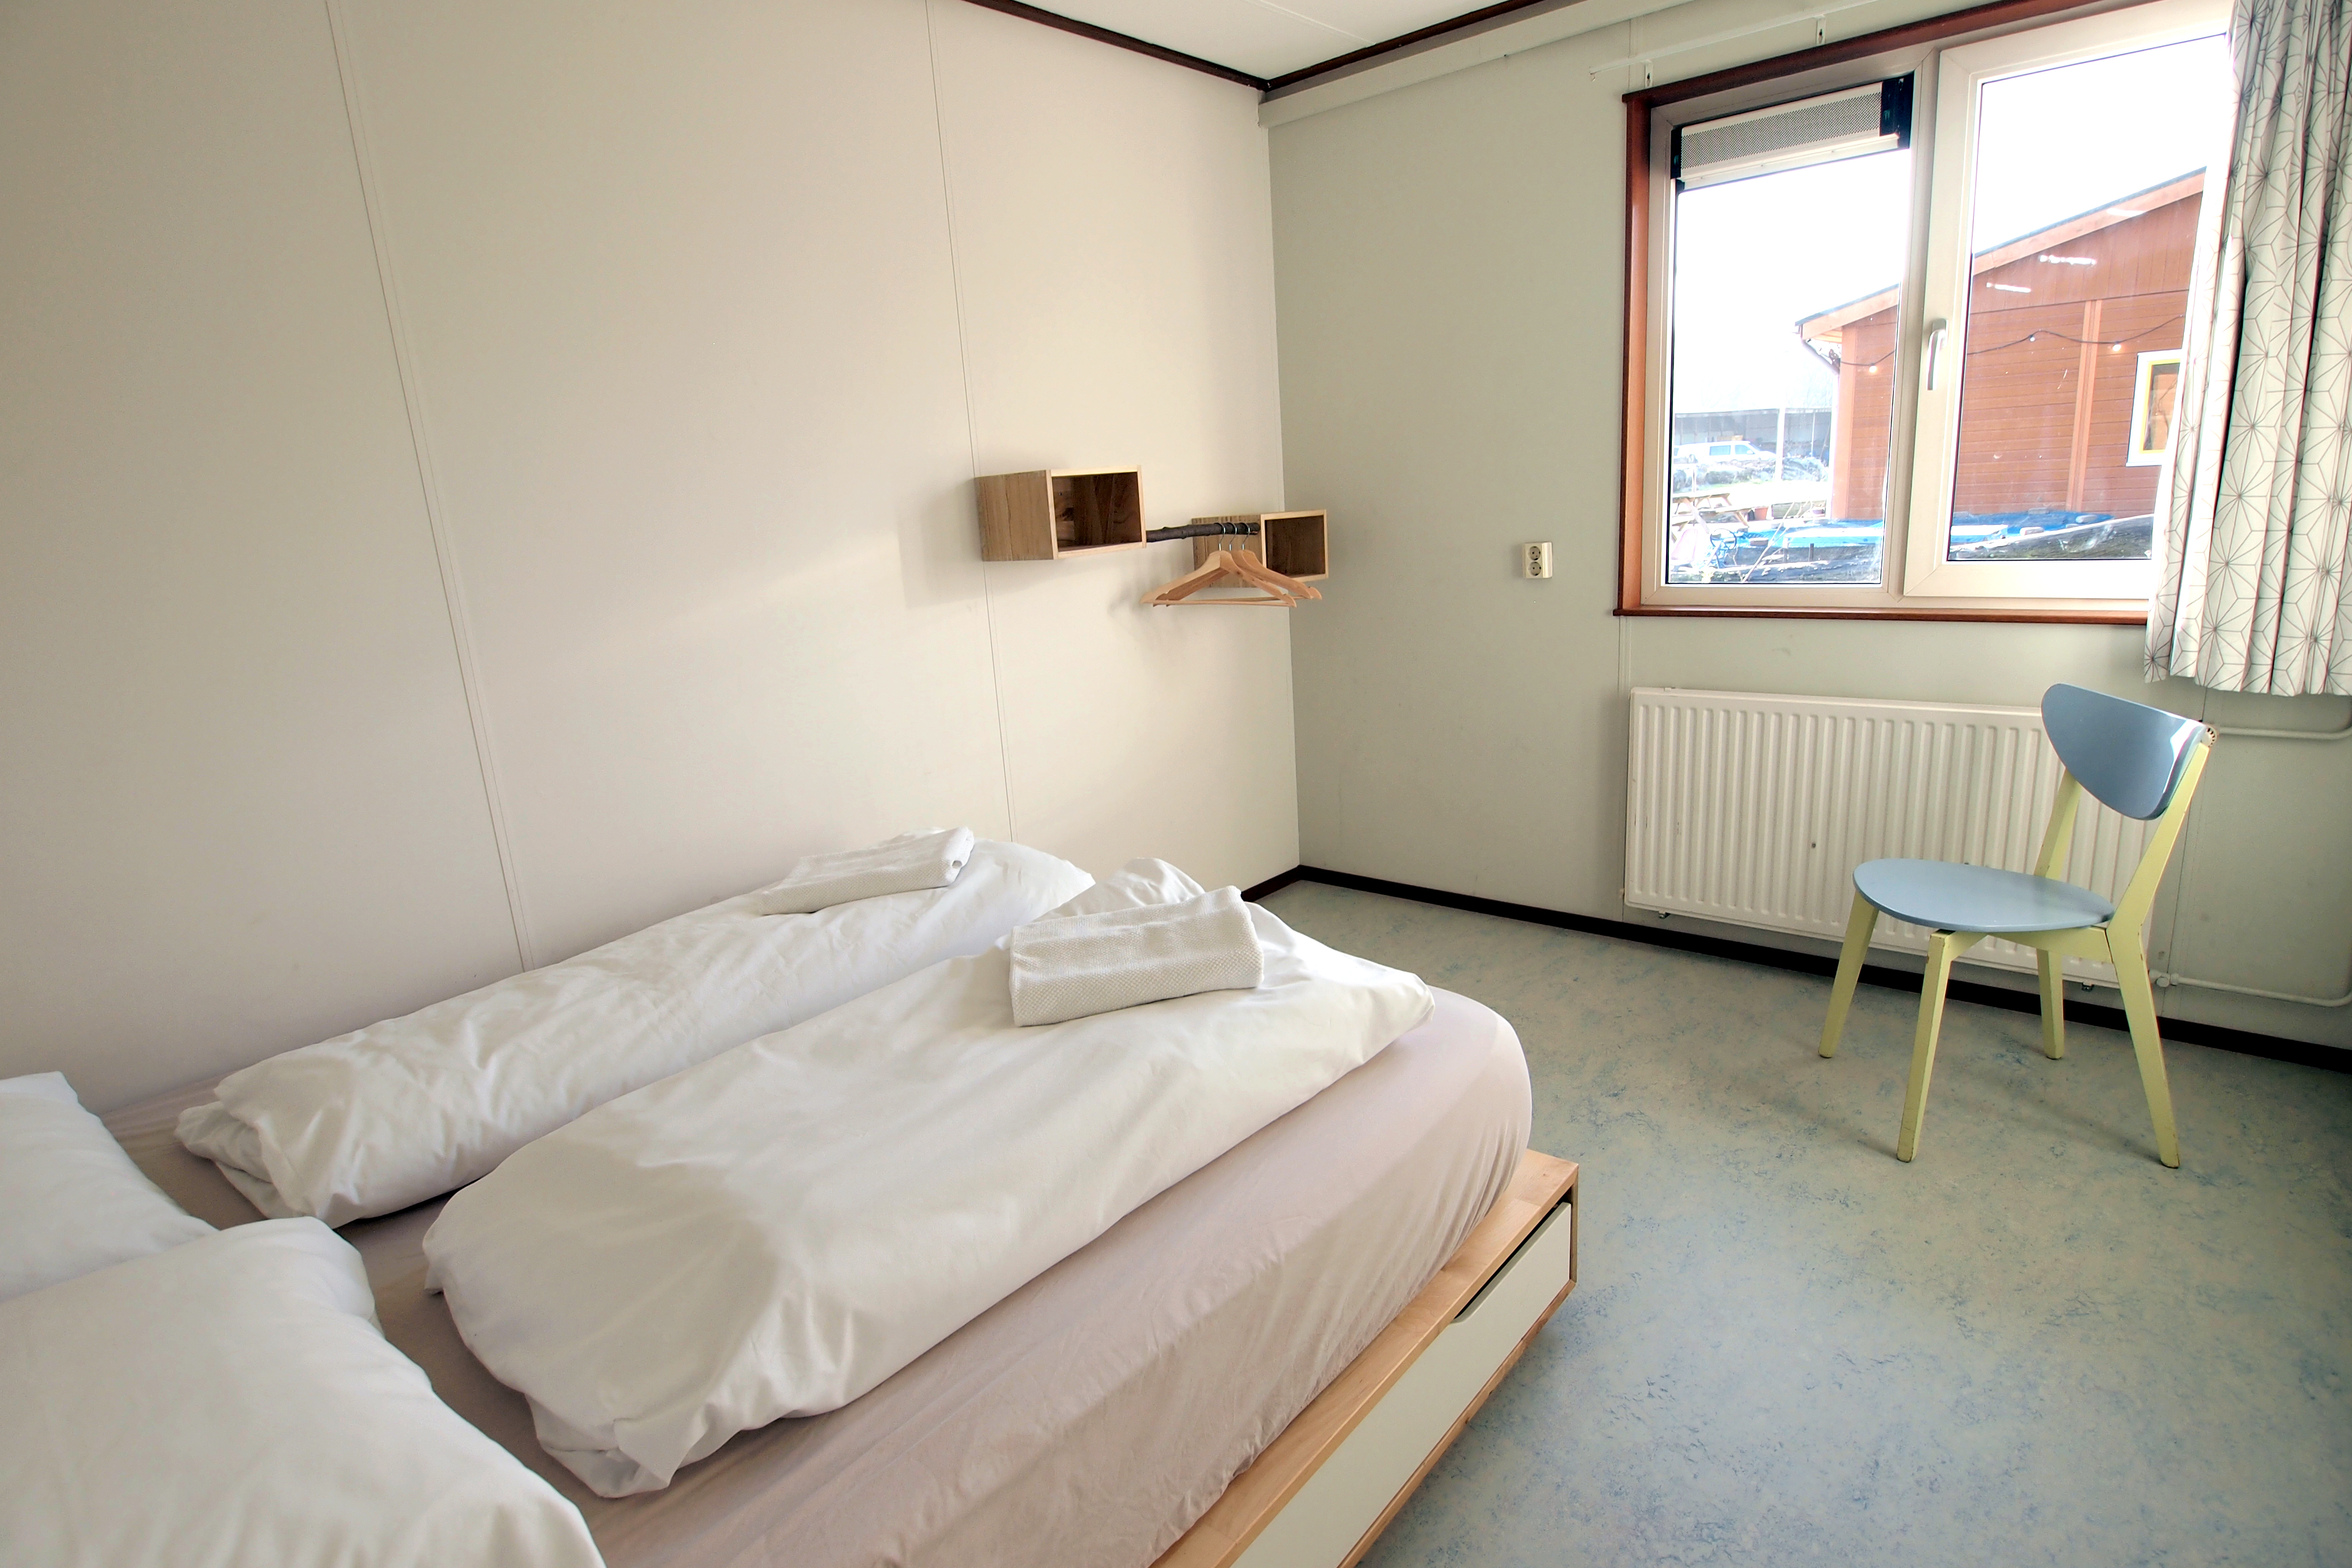 Bekijk foto 1/13 van apartment in Amsterdam